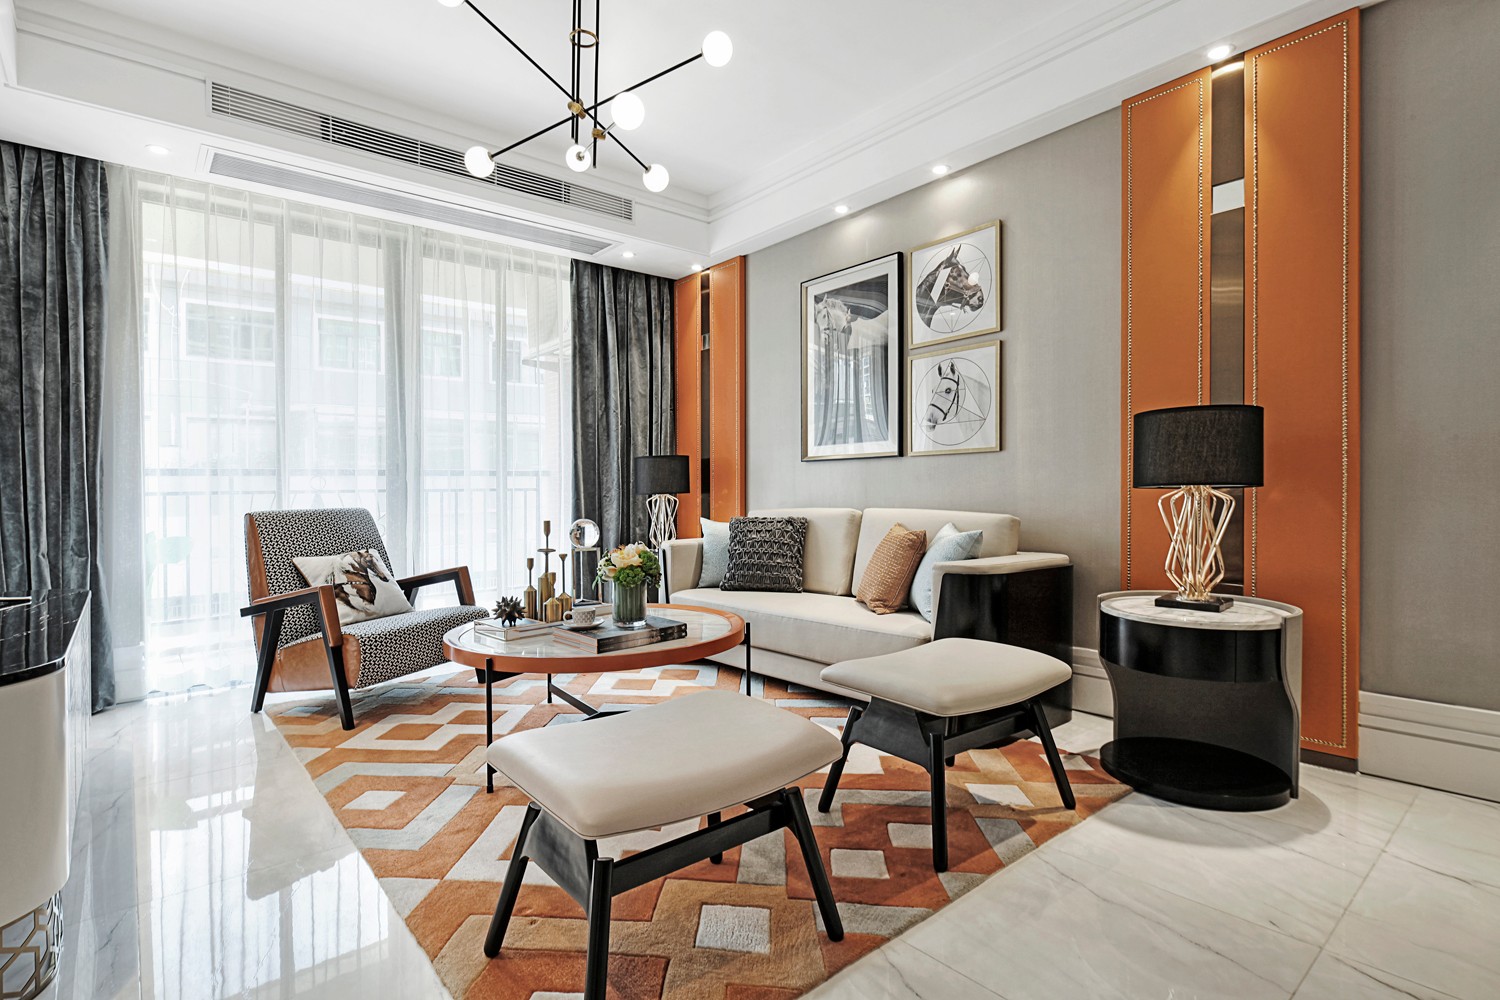 客厅设计将轻奢生活美学表现得淋漓尽致，爱马仕橙展现出休闲与浪漫。